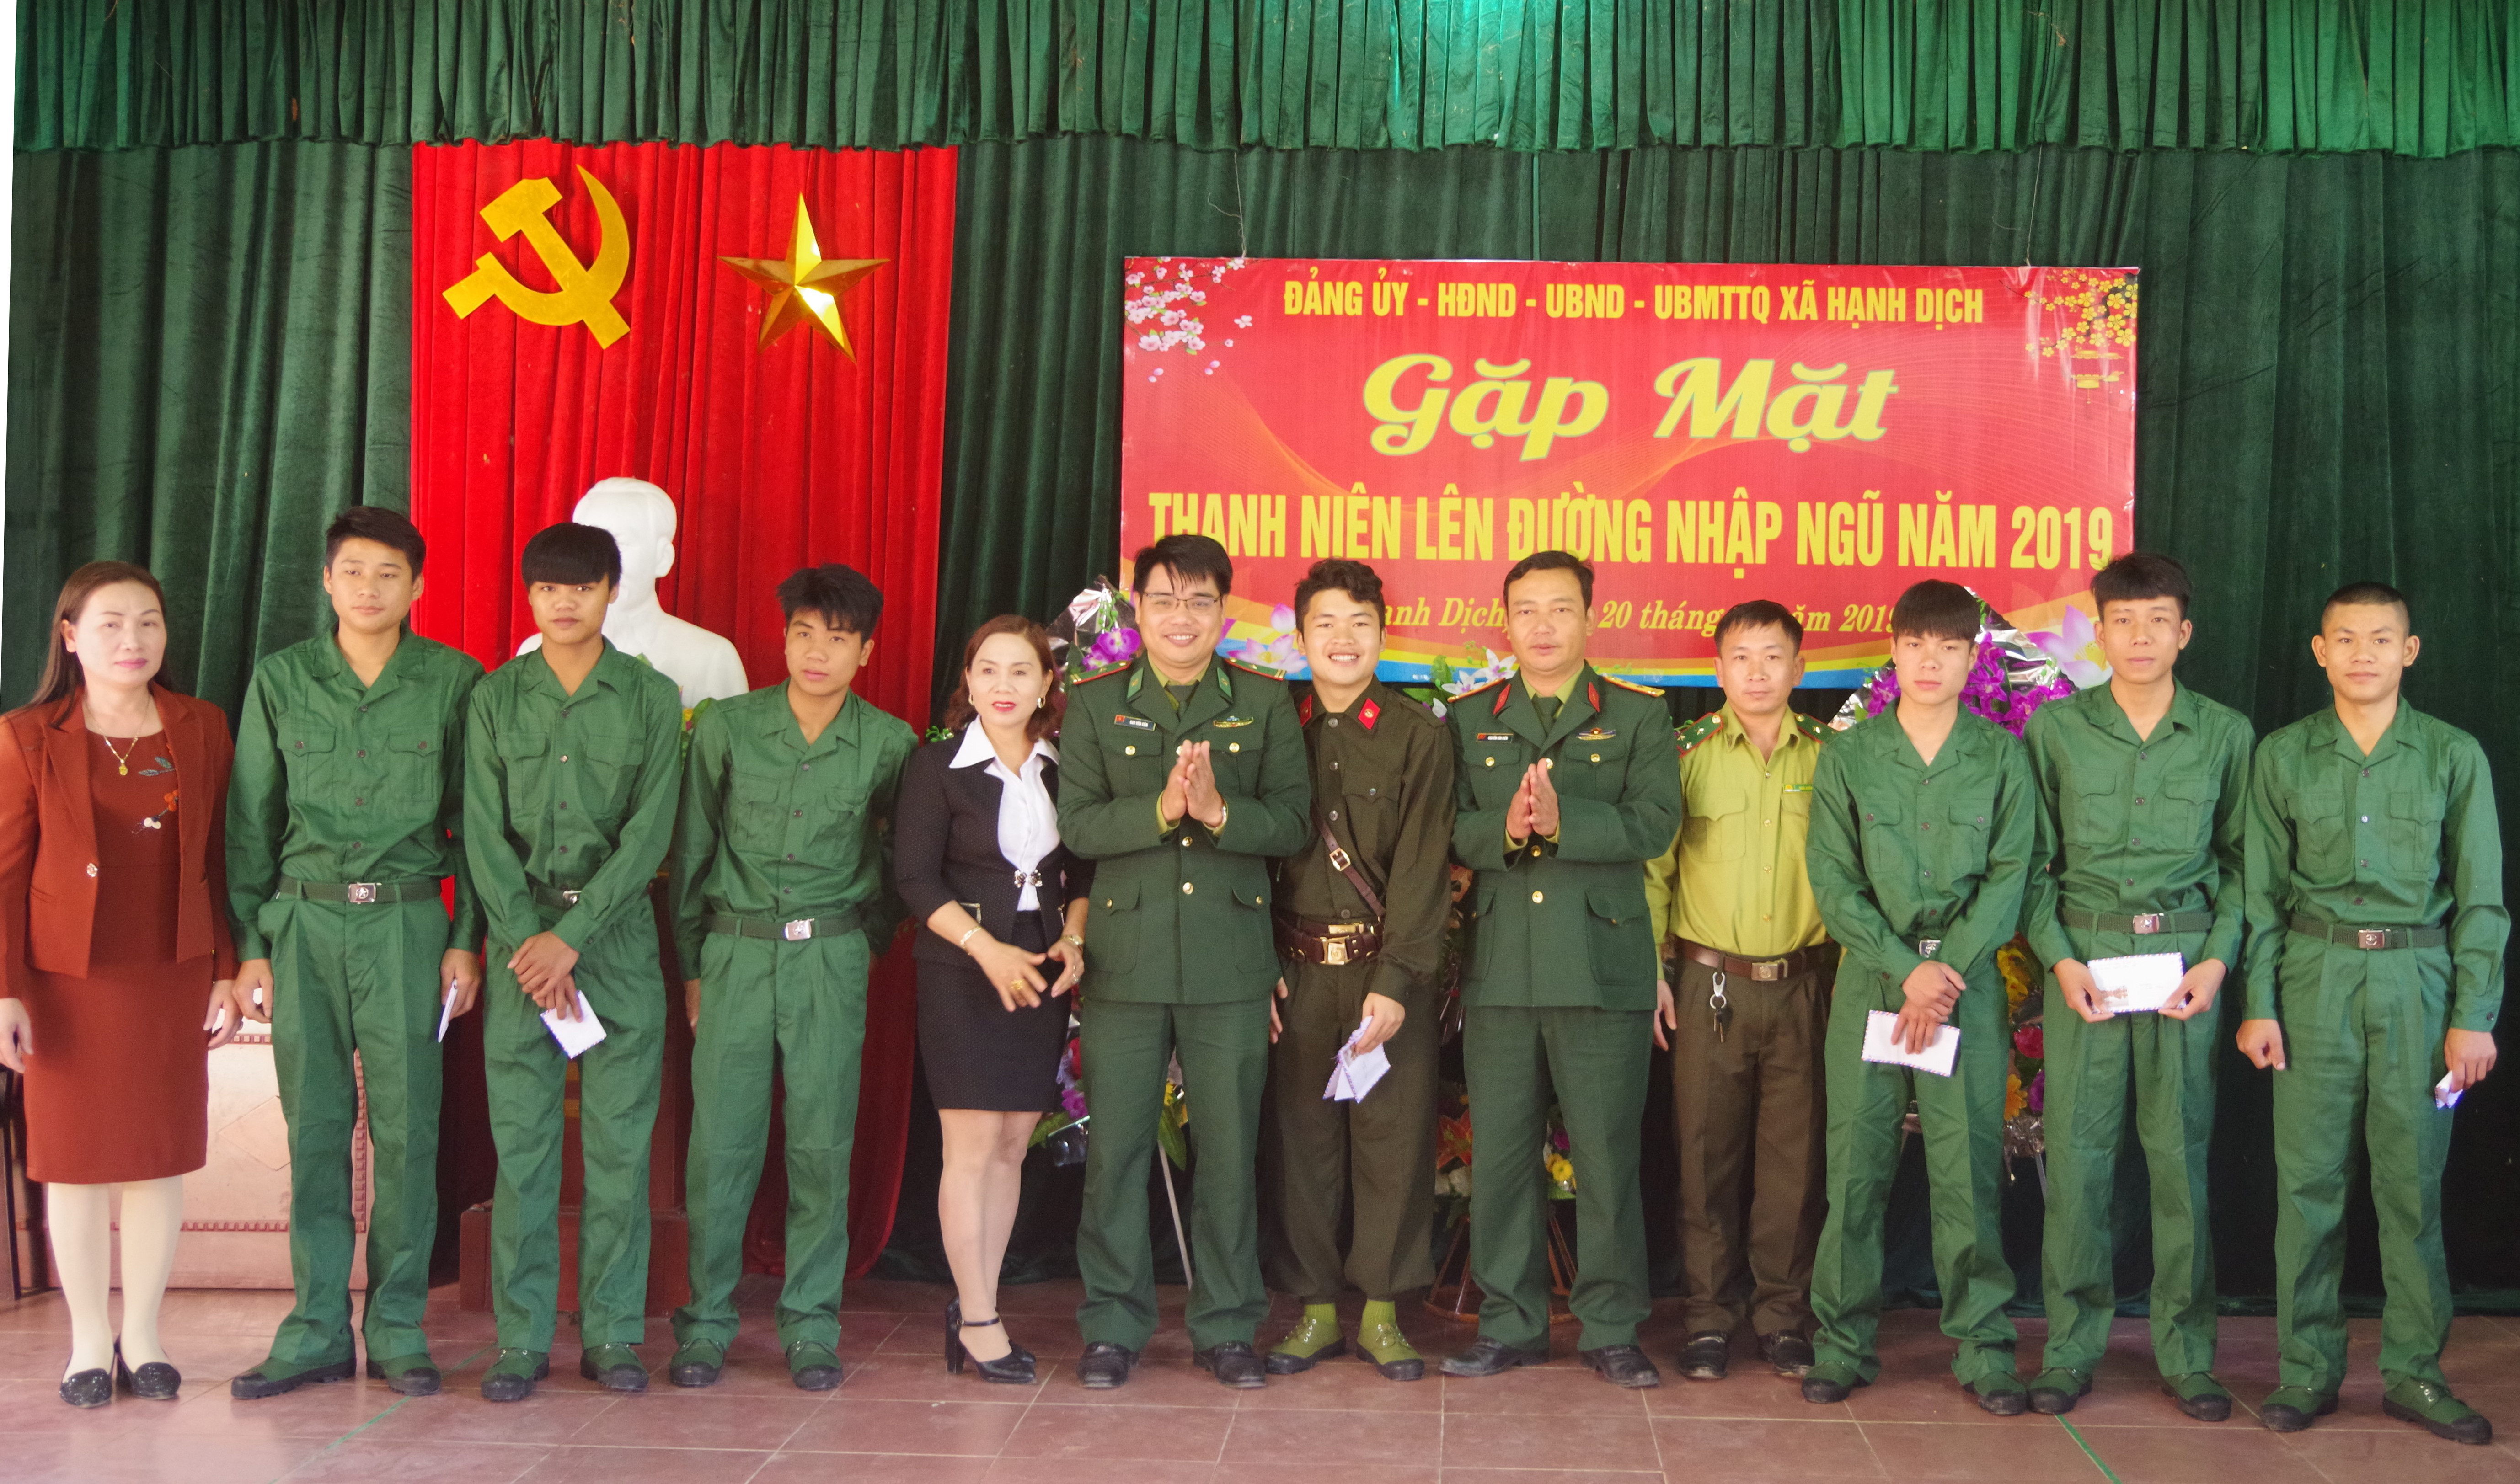 Tại buổi gặp mặt, cấp ủy, chính quyền, các đoàn thể xã Hạnh Dịch, Đồn BP Hạnh Dịch đã tặng quà cho thanh niên lên đường nhập ngũ. Ảnh: Hùng Phong